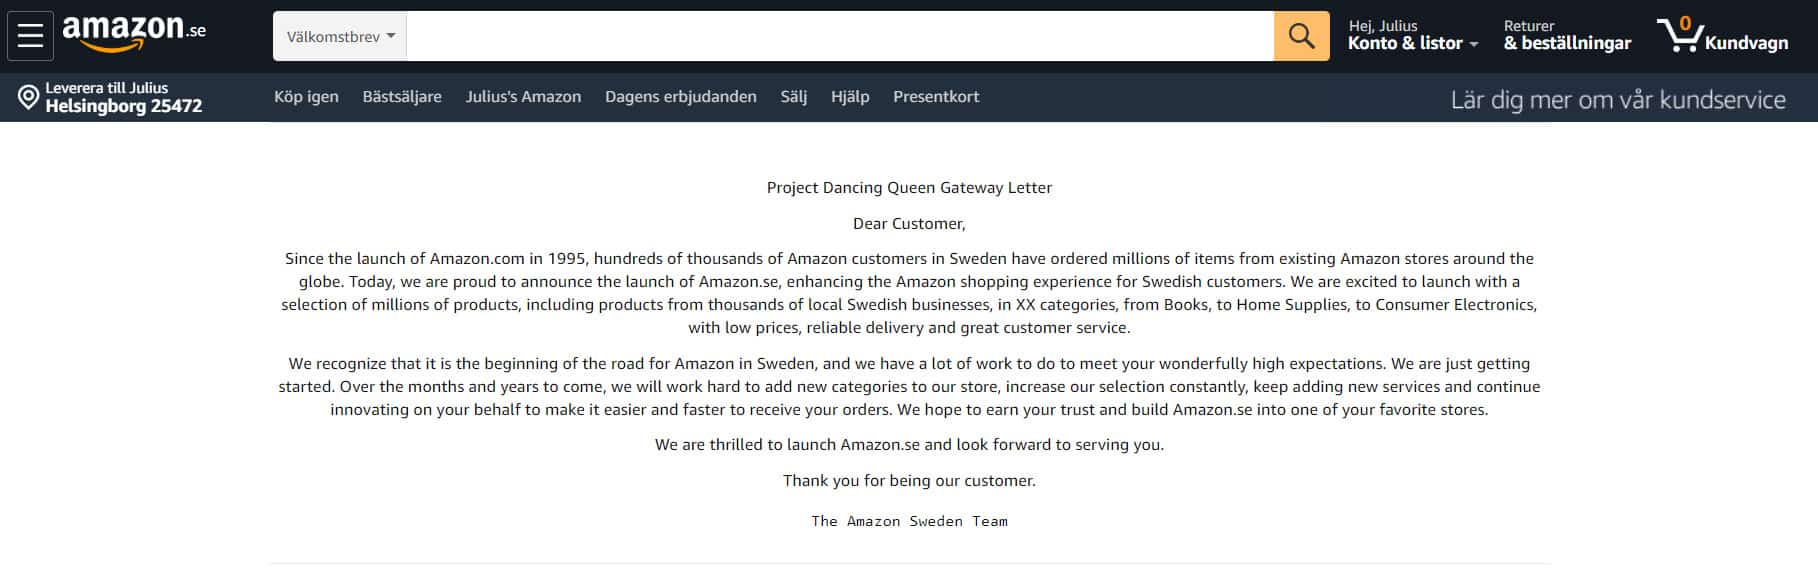 Amazon Svezia messaggio agli utenti